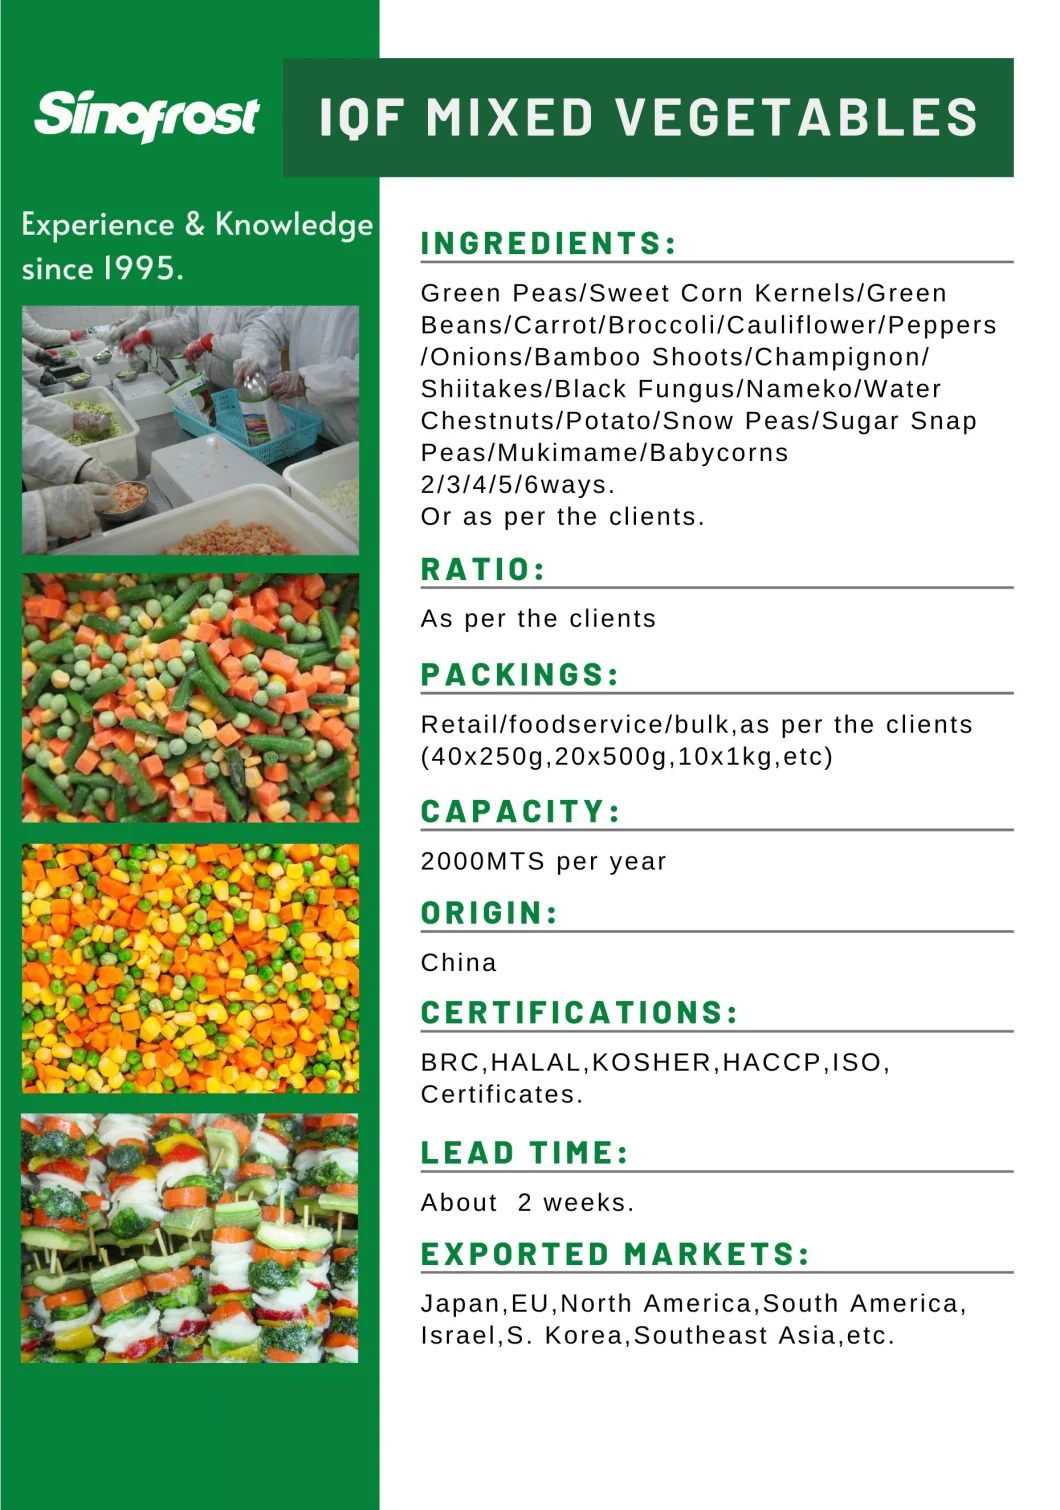 Frozen Vegetables, IQF Vegetables, Bqf Vegetables, Frozen Vegetables Puree, IQF Mixed Vegetables, Frozen Mixed Vegetables